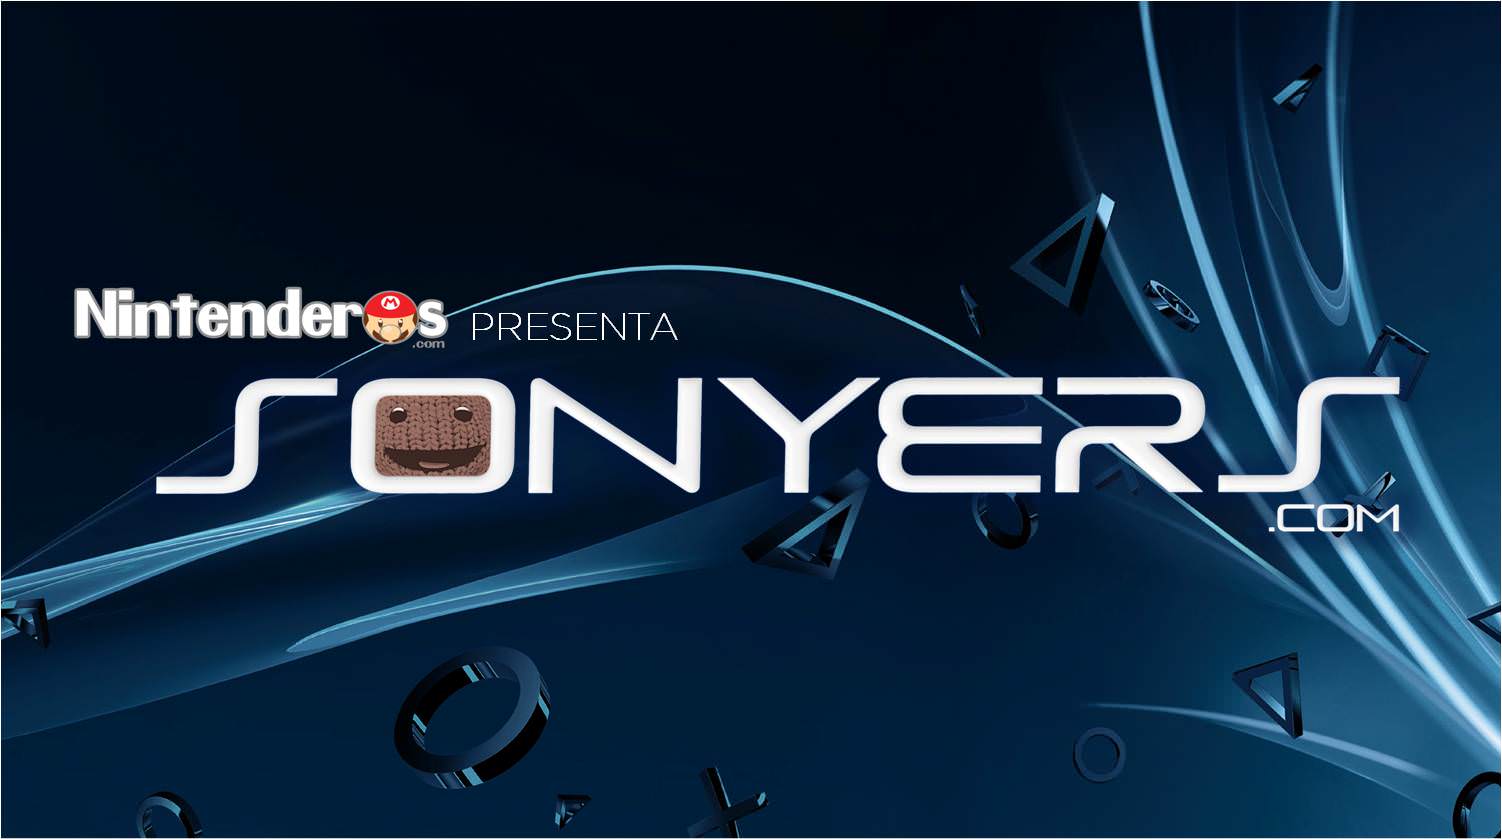 Nintenderos.com presenta Sonyers.com